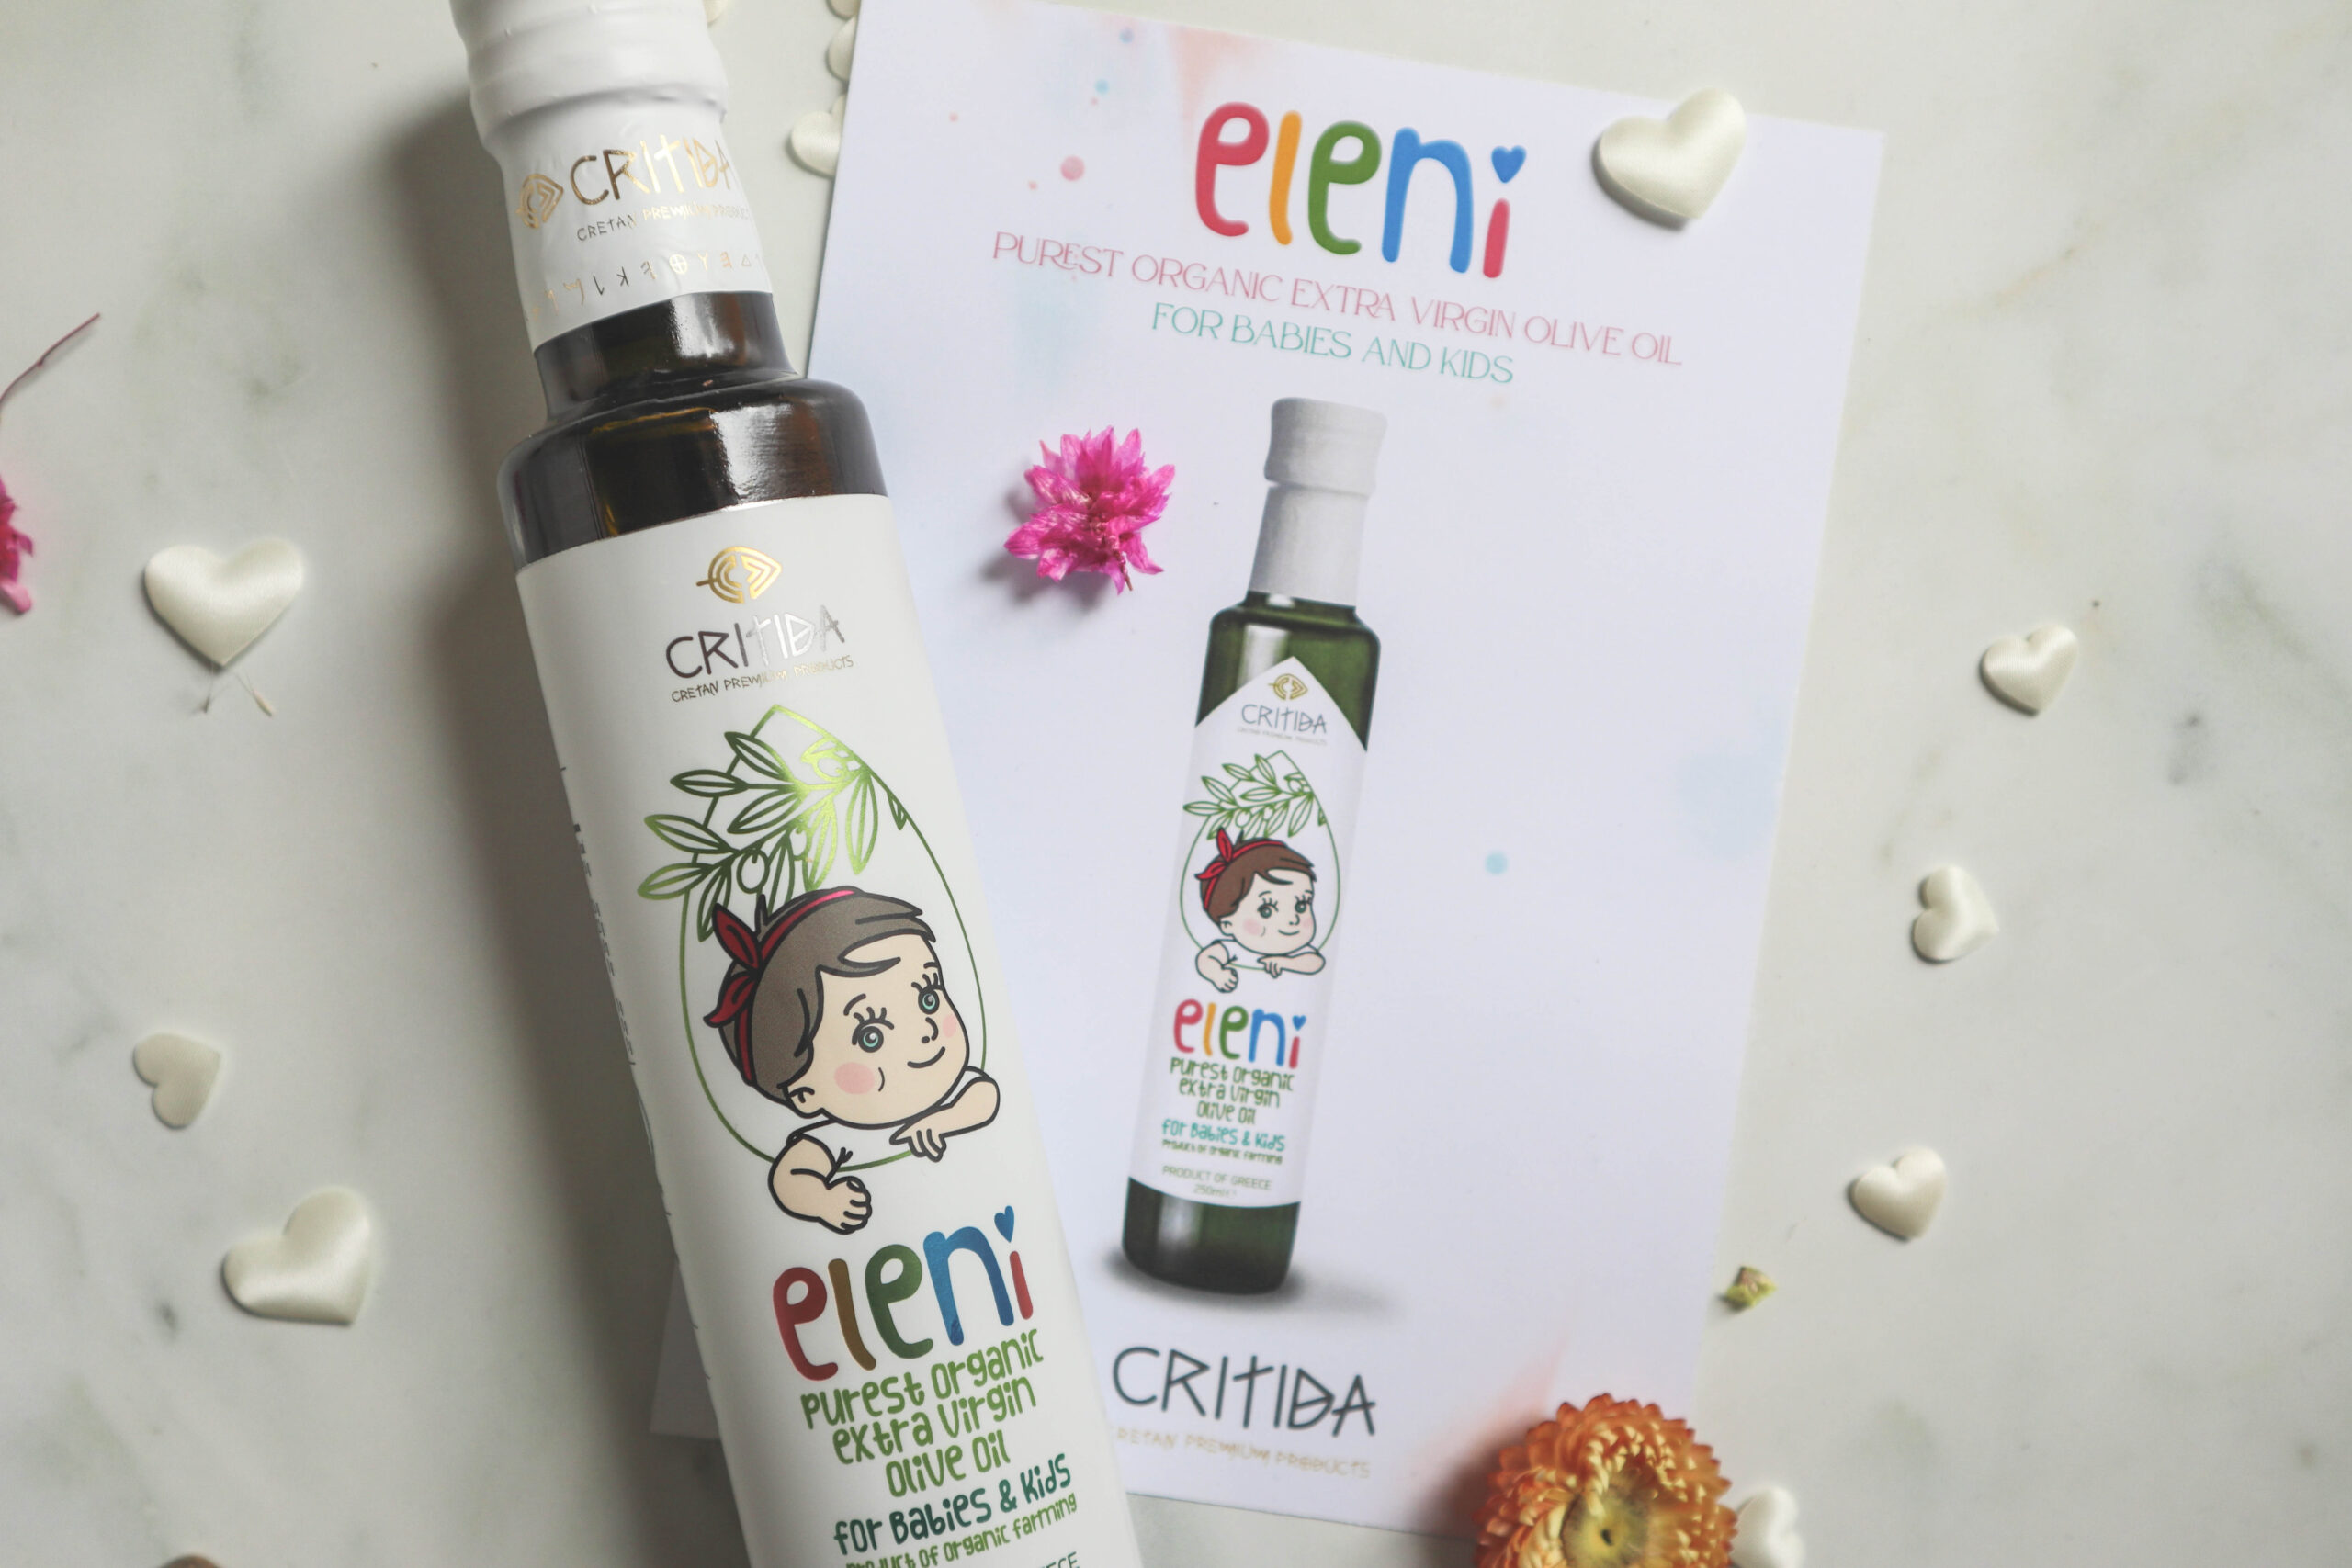 органическое оливковое масло первого холодного отжима для младенцев и детей с Крита